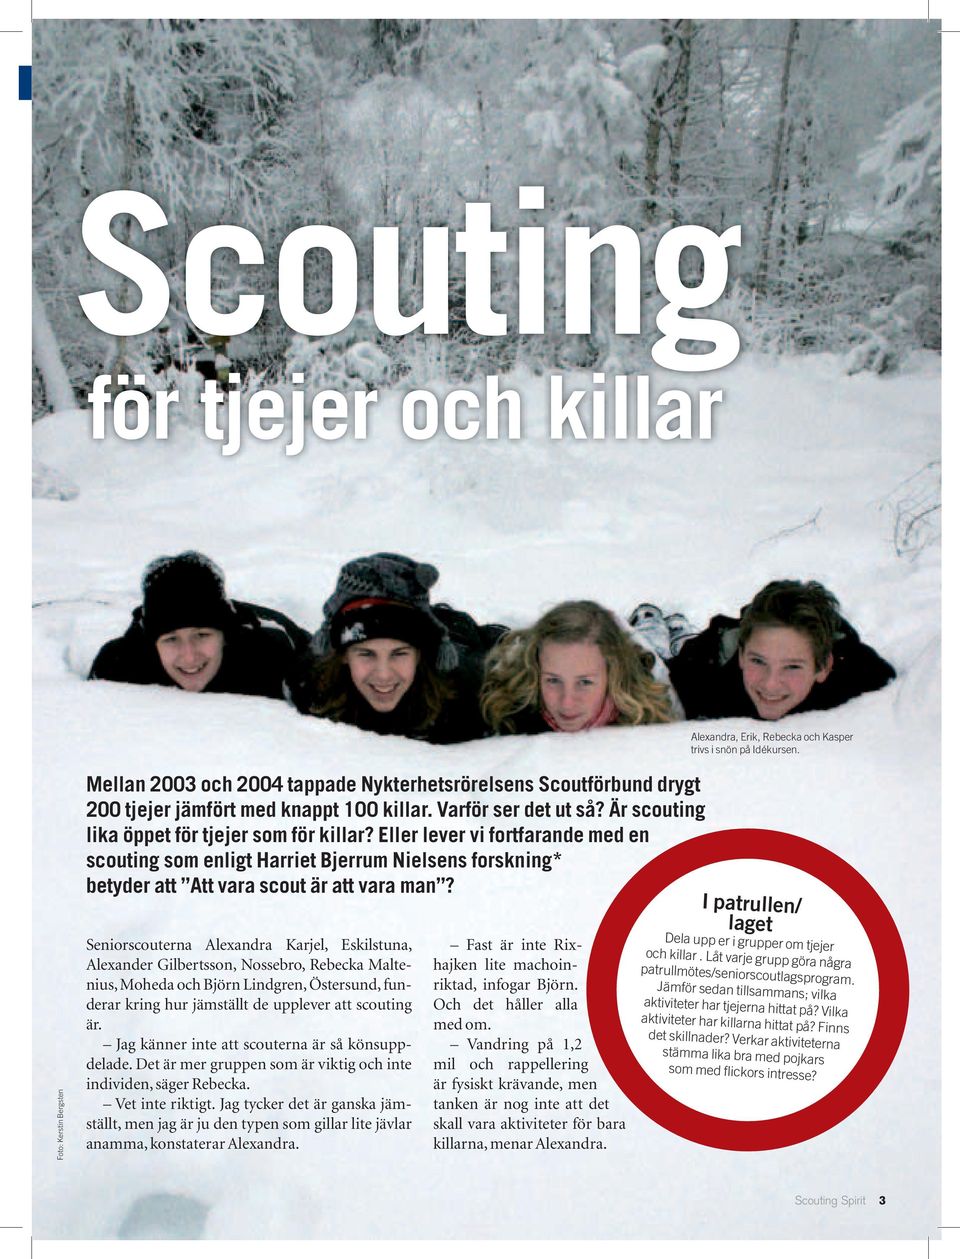 Är scouting lika öppet för tjejer som för killar? Eller lever vi fort farande med en scouting som enligt Harriet Bjerrum Nielsens forskning* betyder att Att vara scout är att vara man?